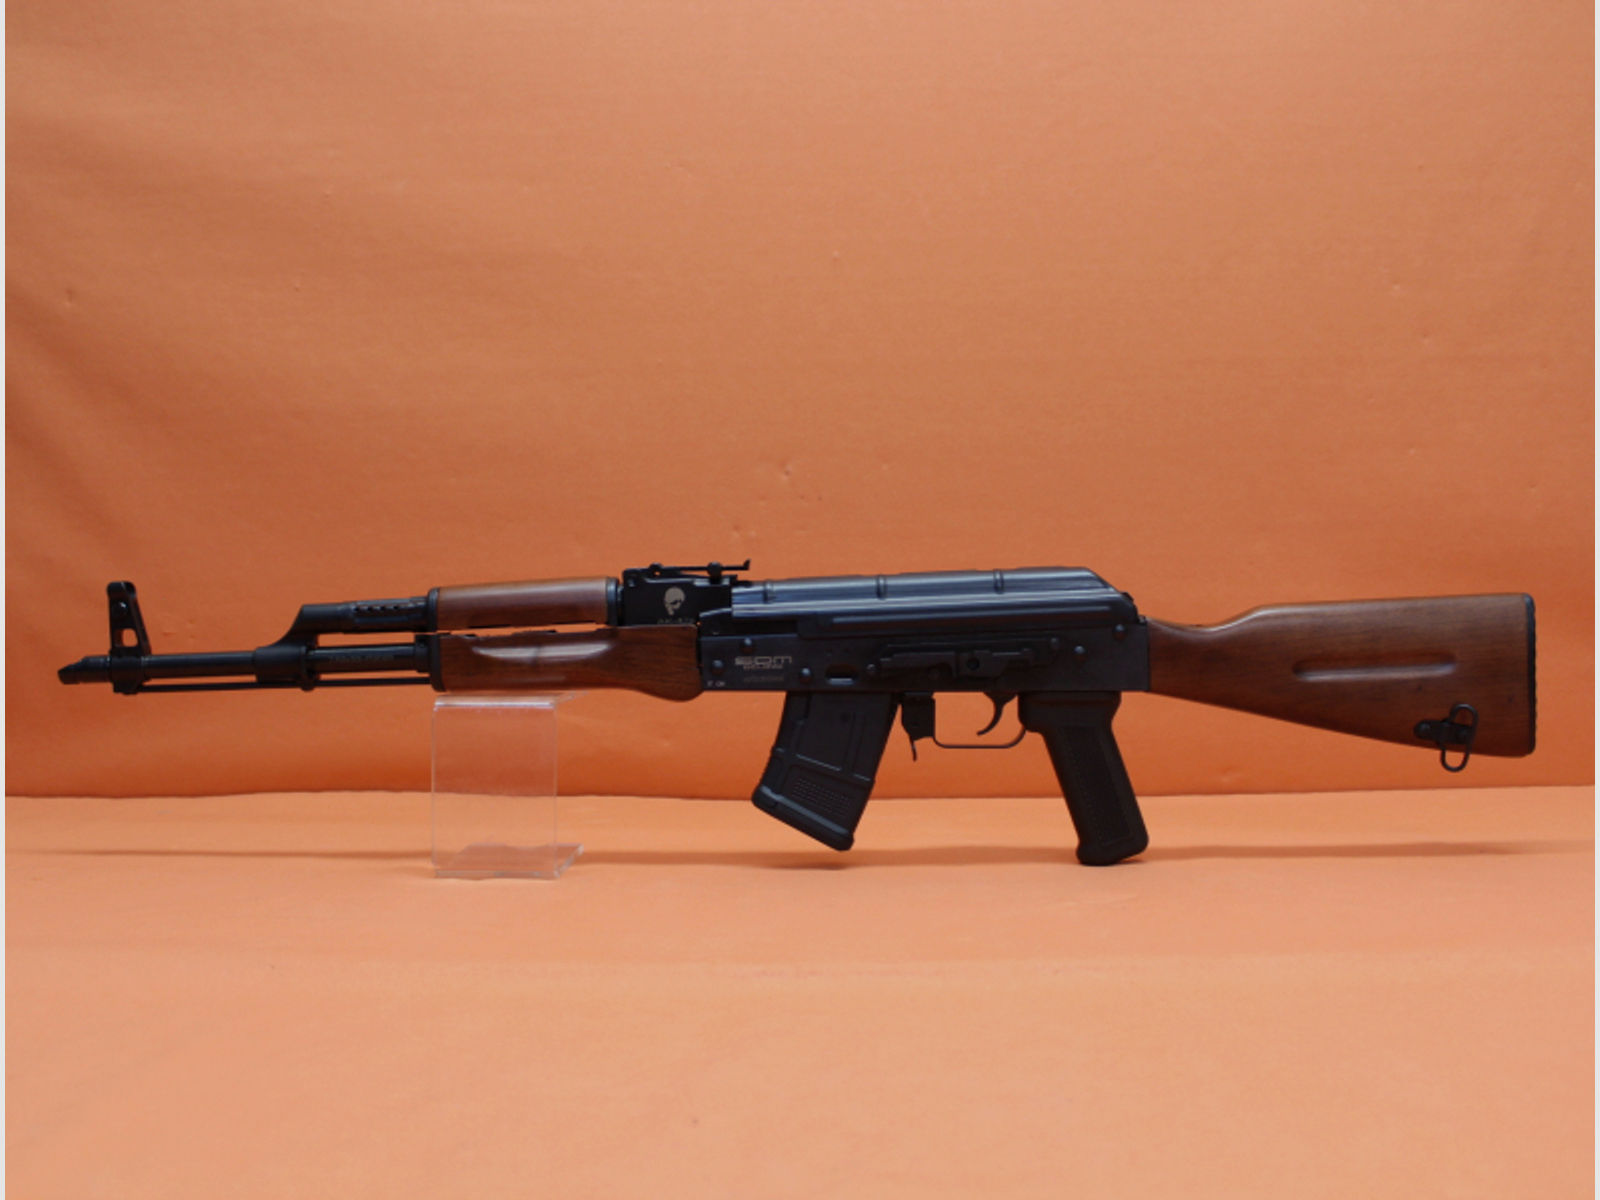 Ha.Büchse 7,62x39 SDM AK-47s 16,5"/ 418mm Lauf/ 14mm Montageschiene/ Holzschaft (AKM/AK47)